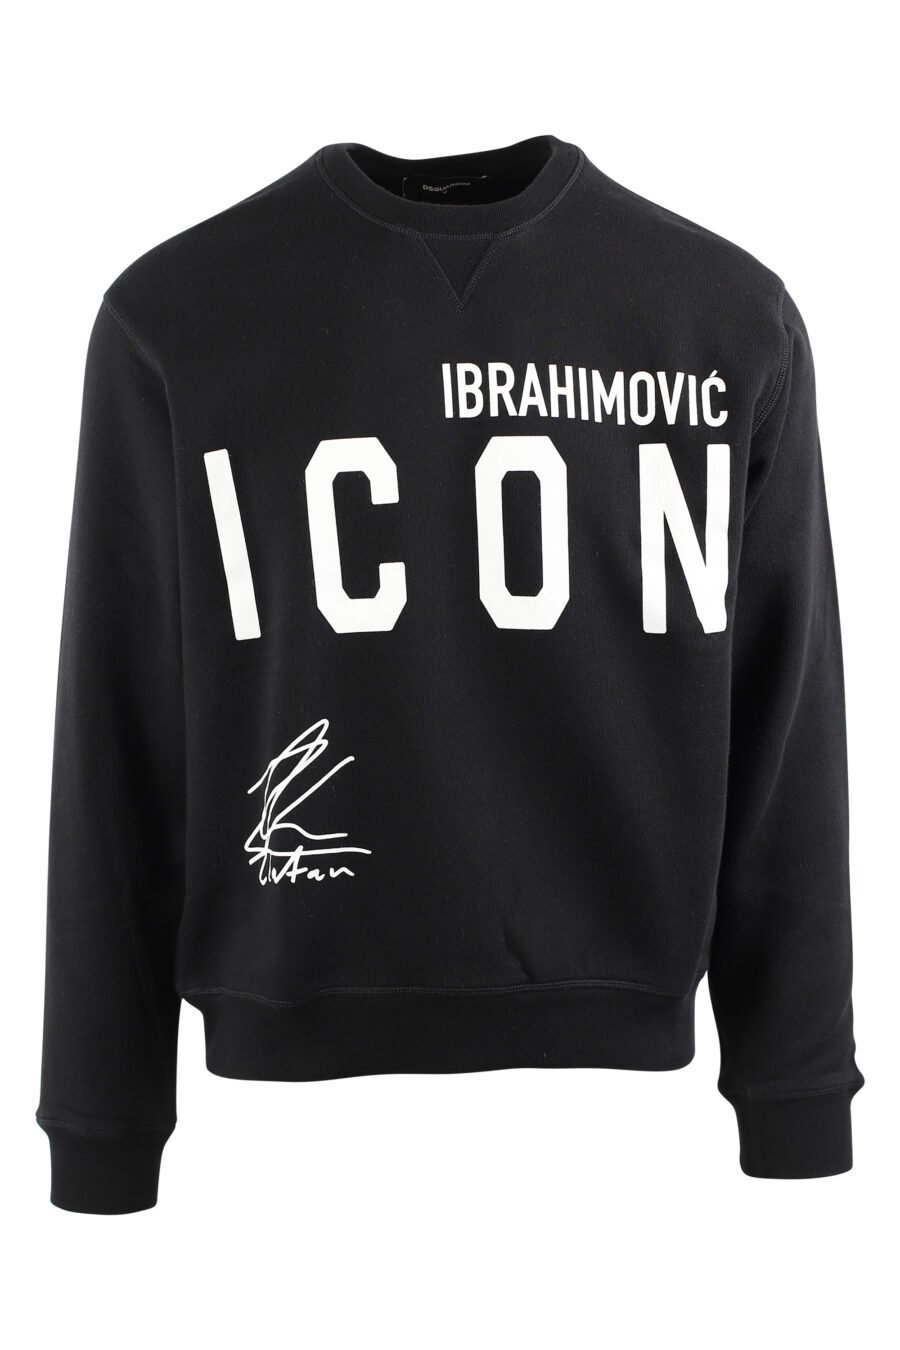 Black sweatshirt with logo "icon ibrahimovic" - IMG 0441